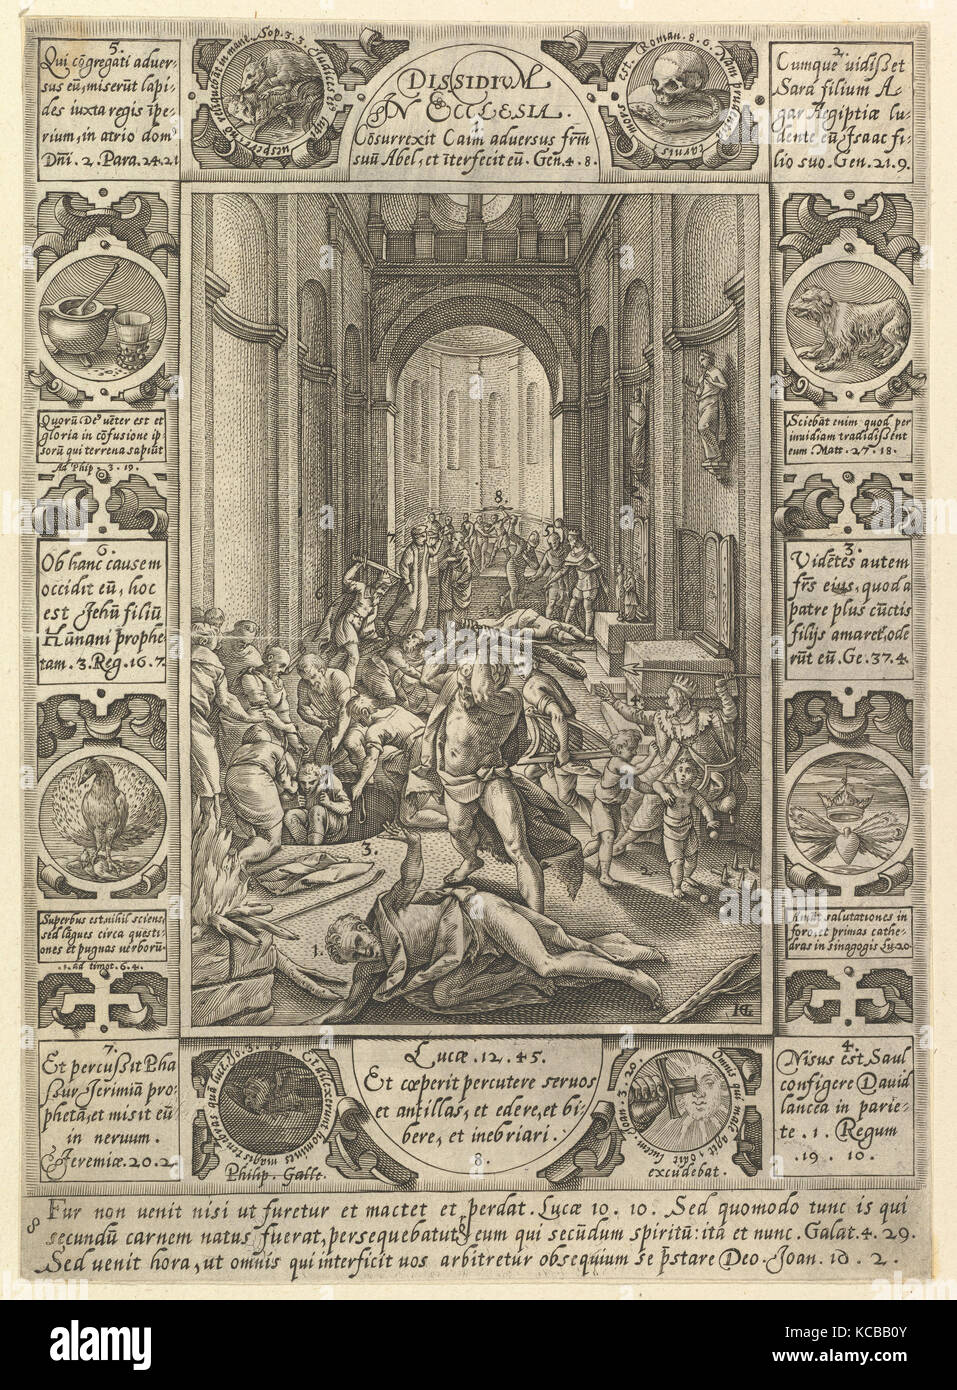 Dissidium in Ecclesia, d'allégories de la foi chrétienne, de Christian et profane des allégories, Hendrick Goltzius, 1575-16 Banque D'Images